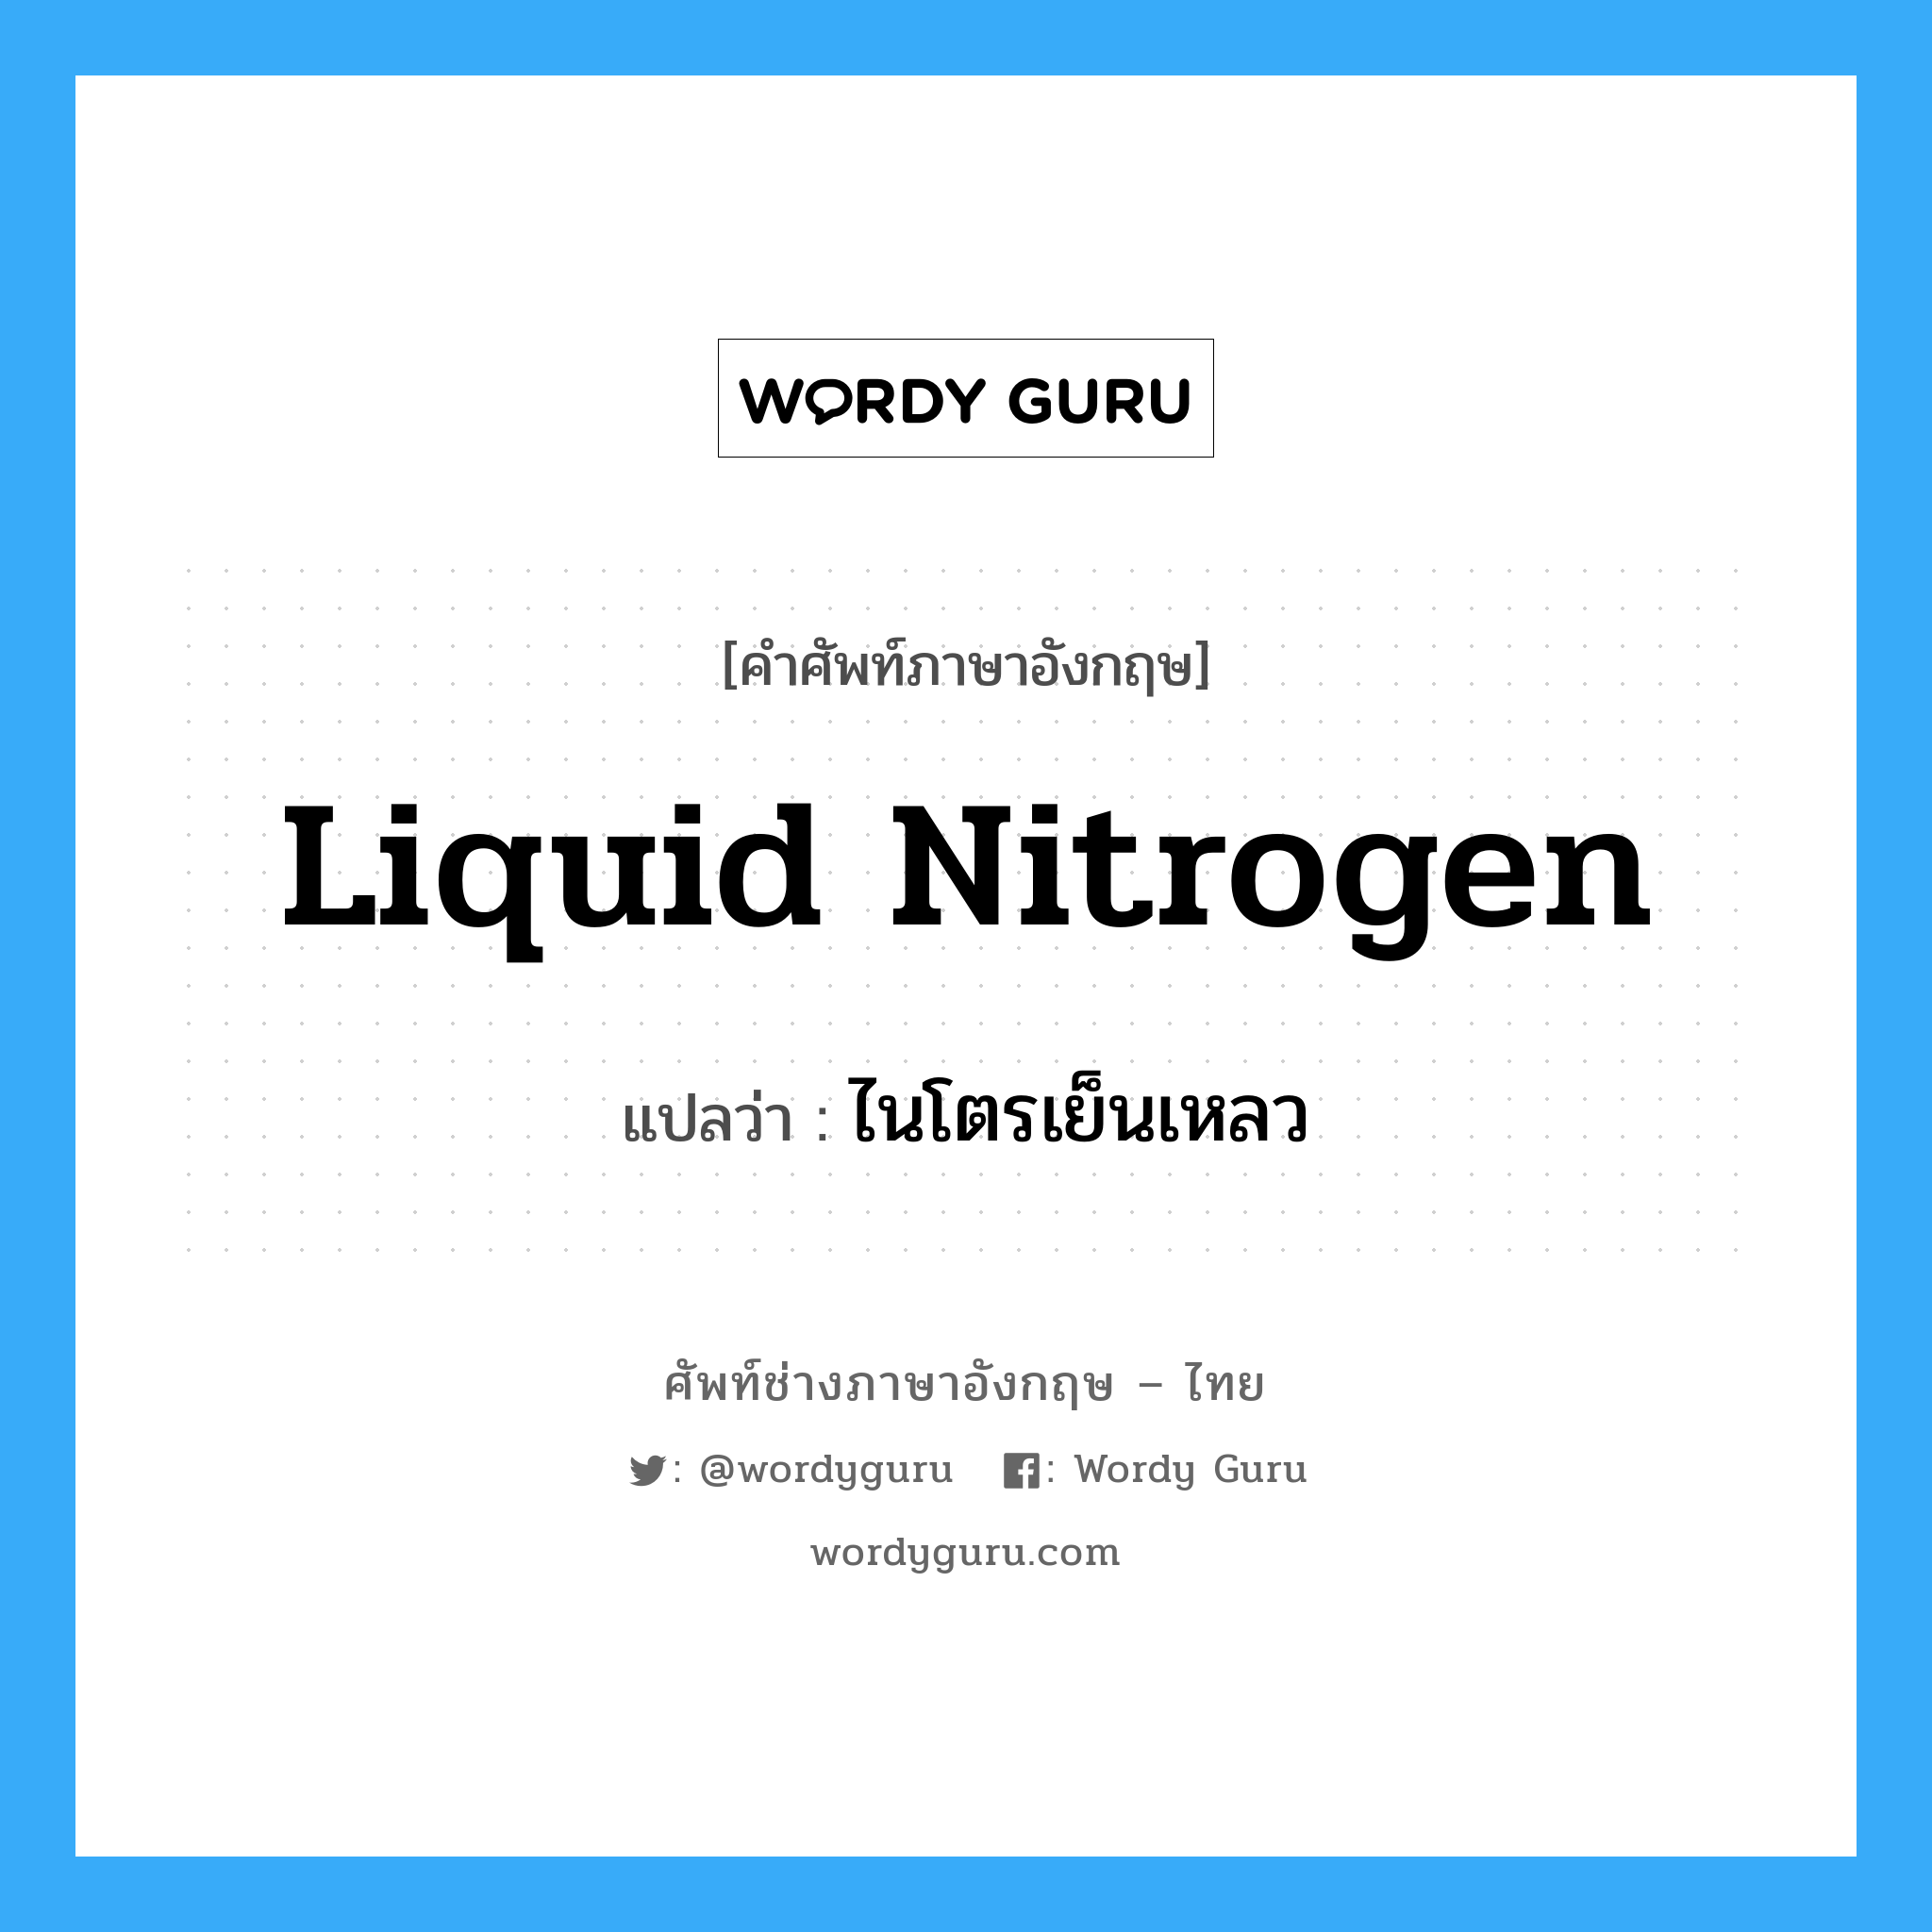 ไนโตรเย็นเหลว ภาษาอังกฤษ?, คำศัพท์ช่างภาษาอังกฤษ - ไทย ไนโตรเย็นเหลว คำศัพท์ภาษาอังกฤษ ไนโตรเย็นเหลว แปลว่า liquid nitrogen